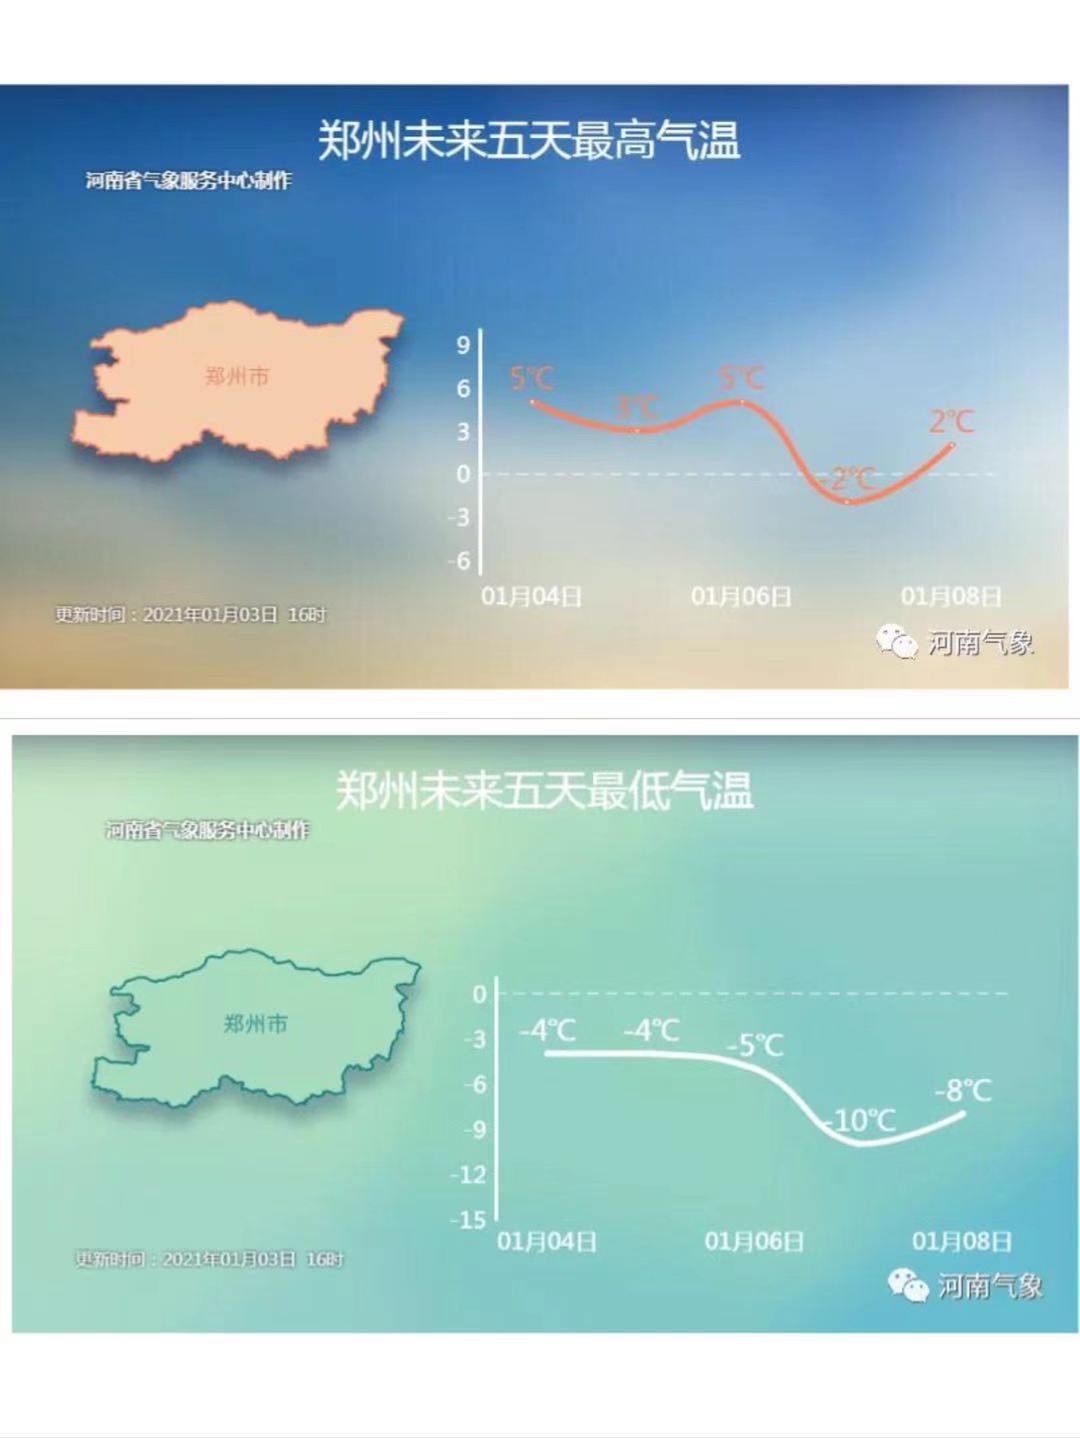 本周冷空气将卷土重来 预计河南省再次迎来6到8度明显降温